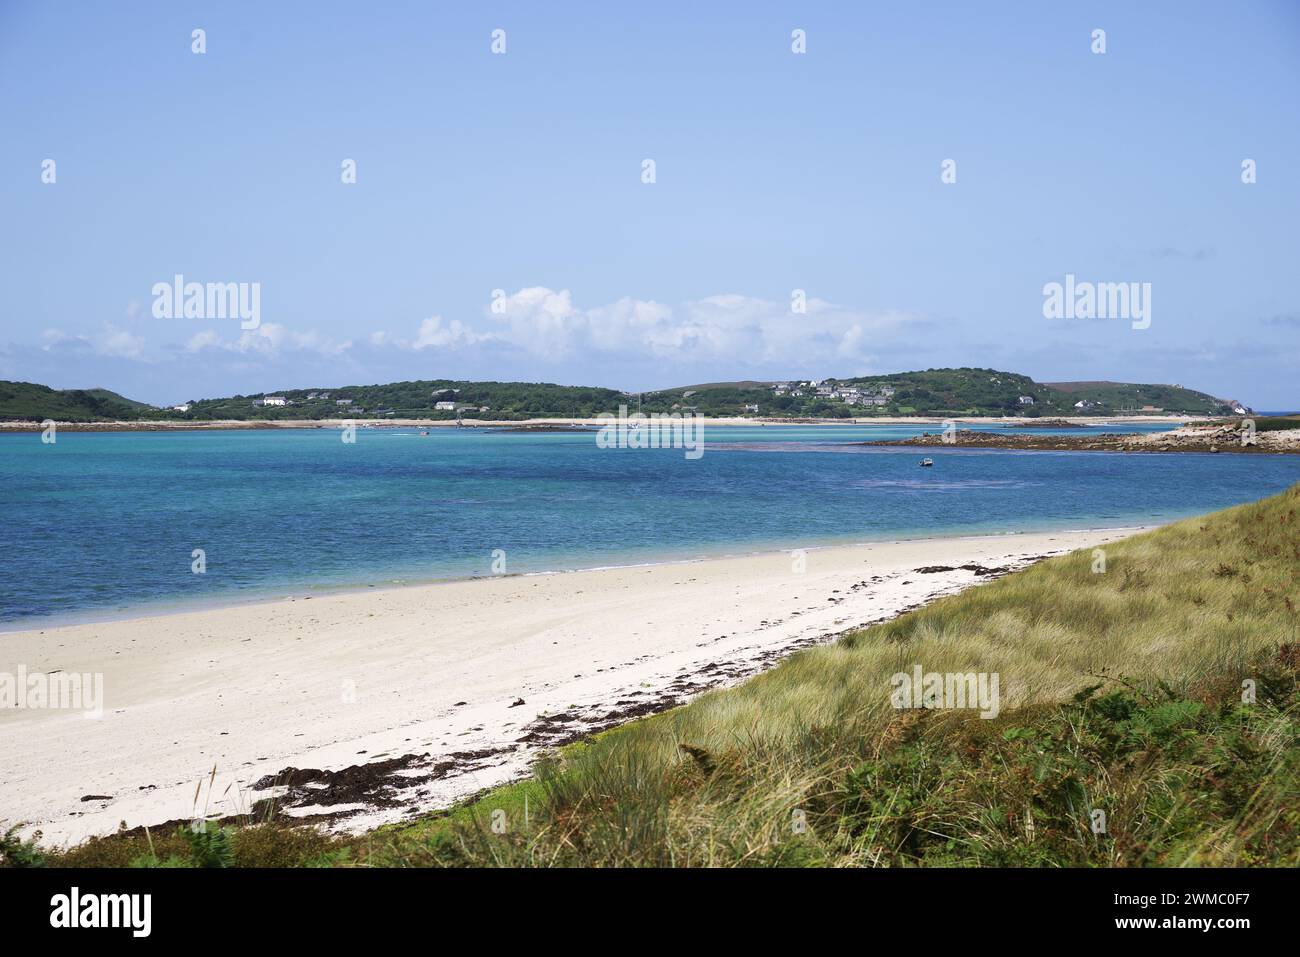 Mit Sandstränden und azurblauem Meer auf der Insel Tresco - Isles of Scilly, Großbritannien Stockfoto